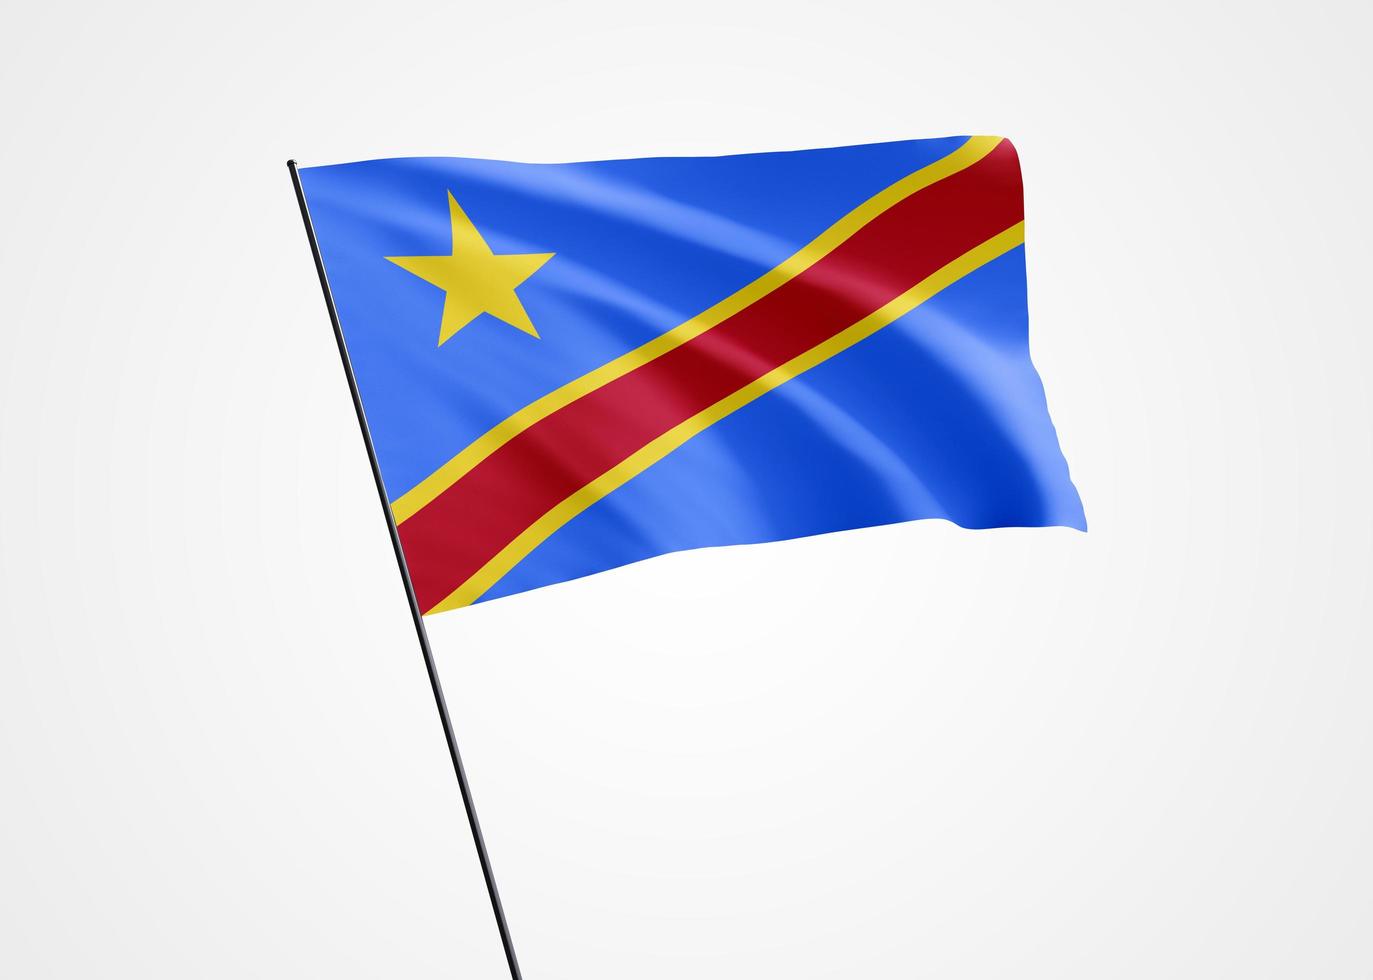 drapeau de la république démocratique du congo volant haut dans le fond blanc isolé. 30 juin collection de drapeaux nationaux du monde de la fête de l'indépendance du congo. illustration 3d du drapeau de la nation photo